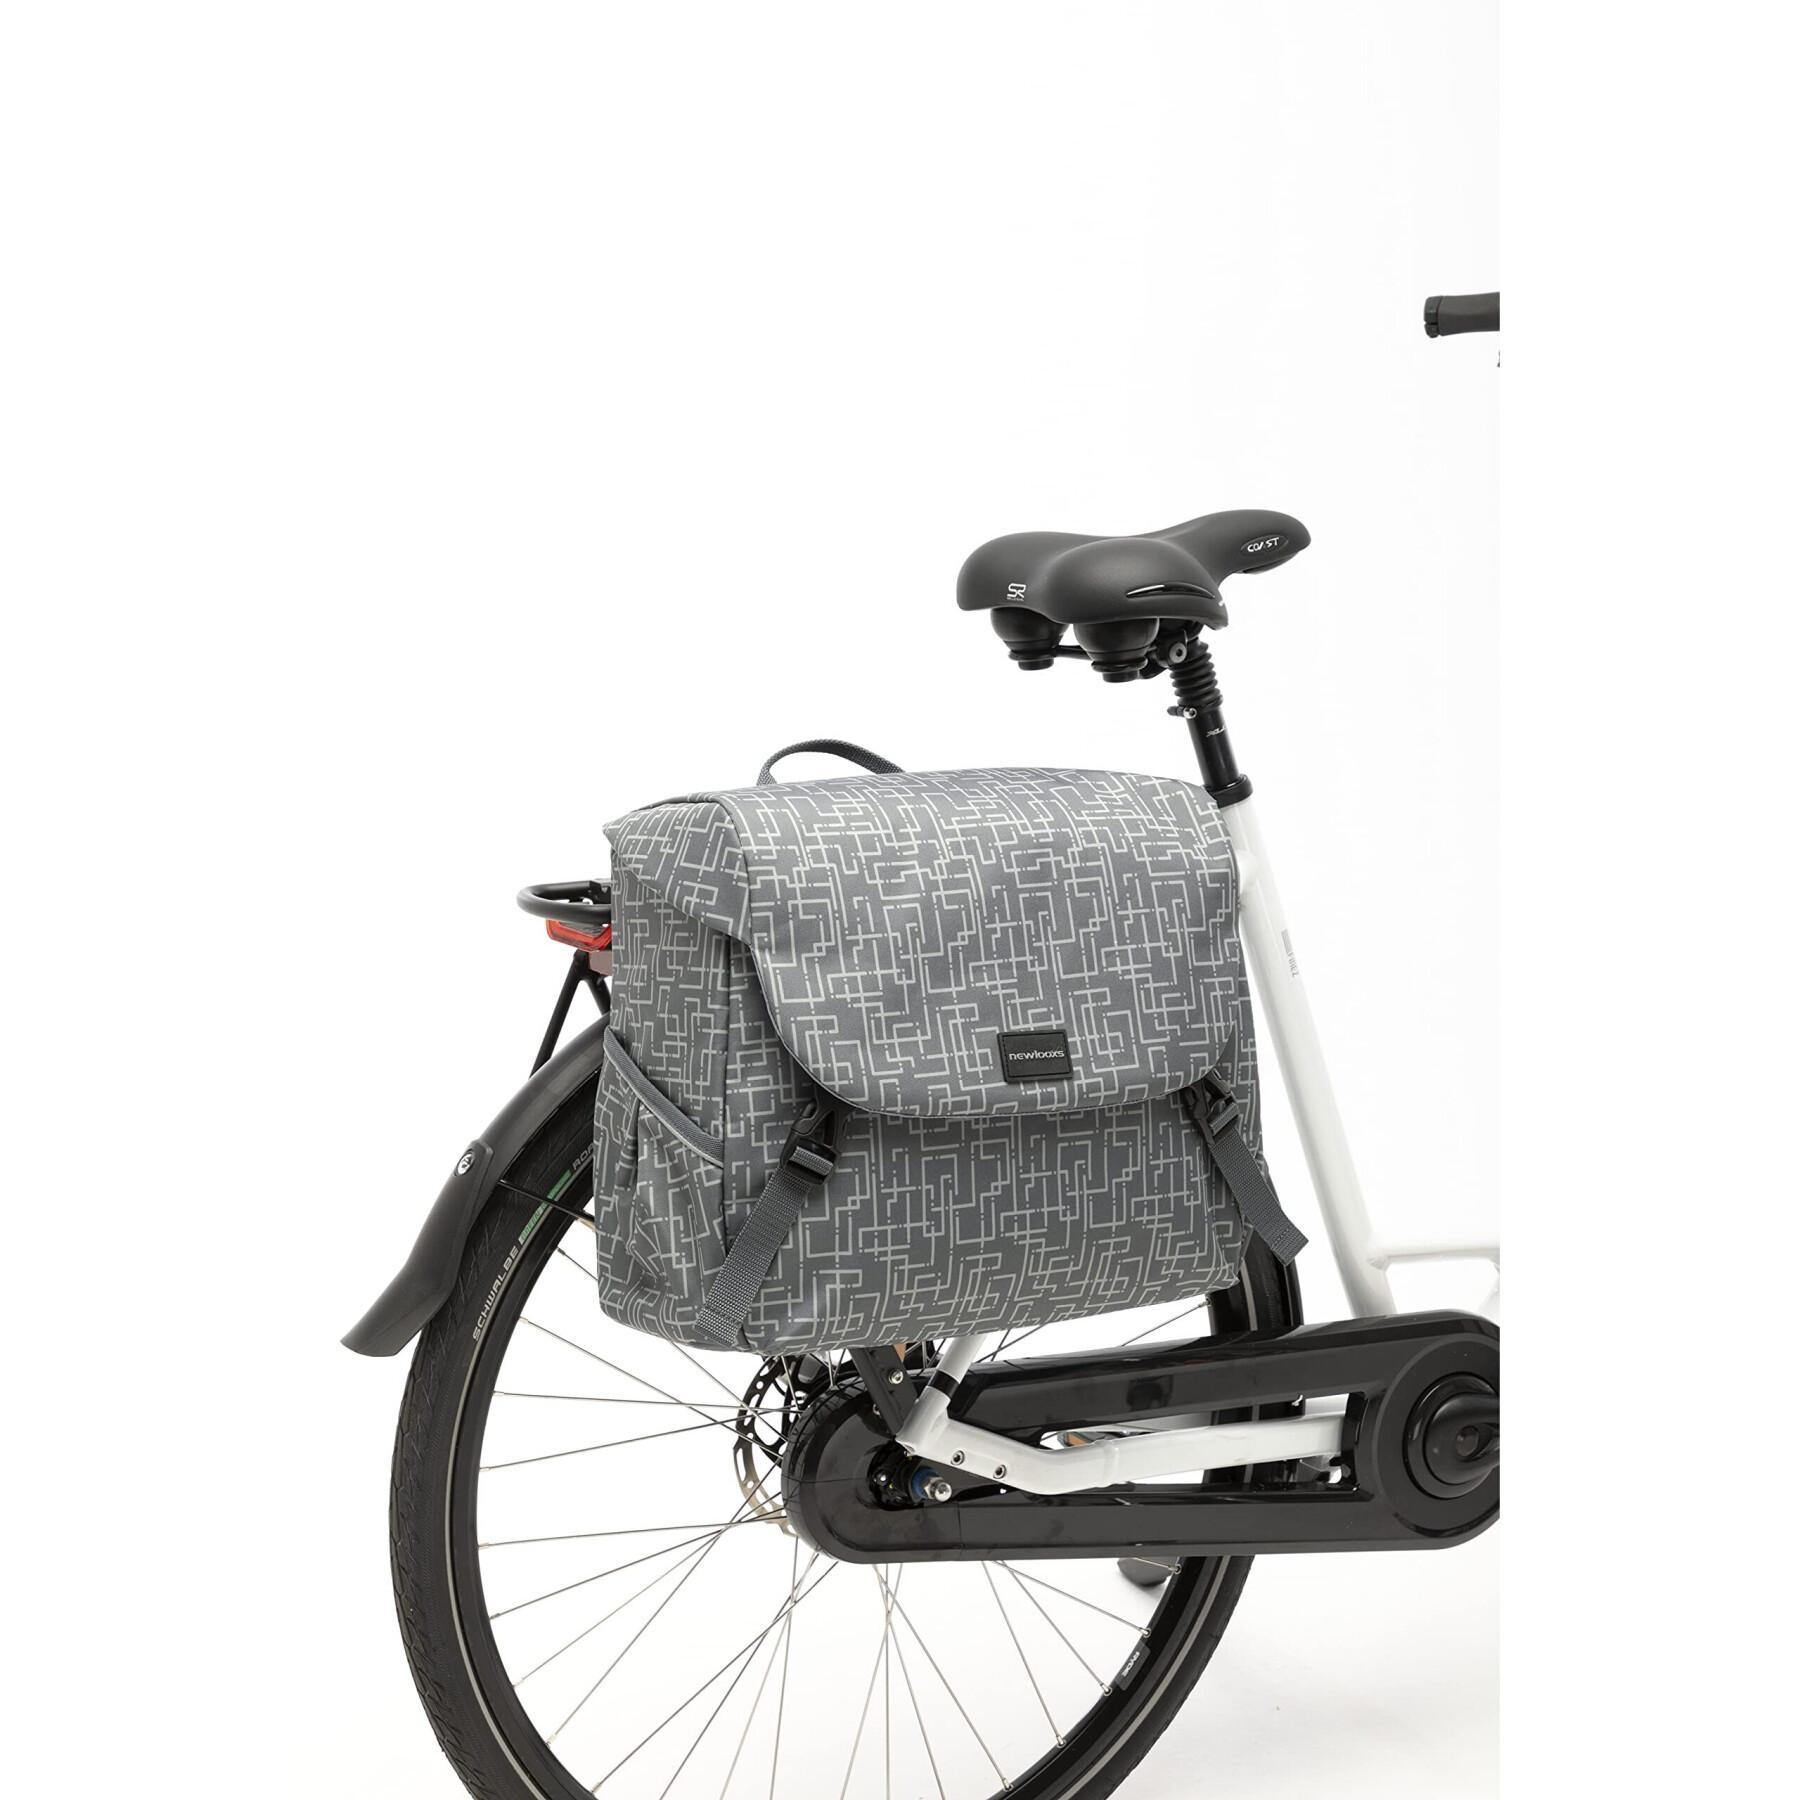 Bolsa impermeable de poliéster reflectante para bicicletas New Looxs Mondi joy